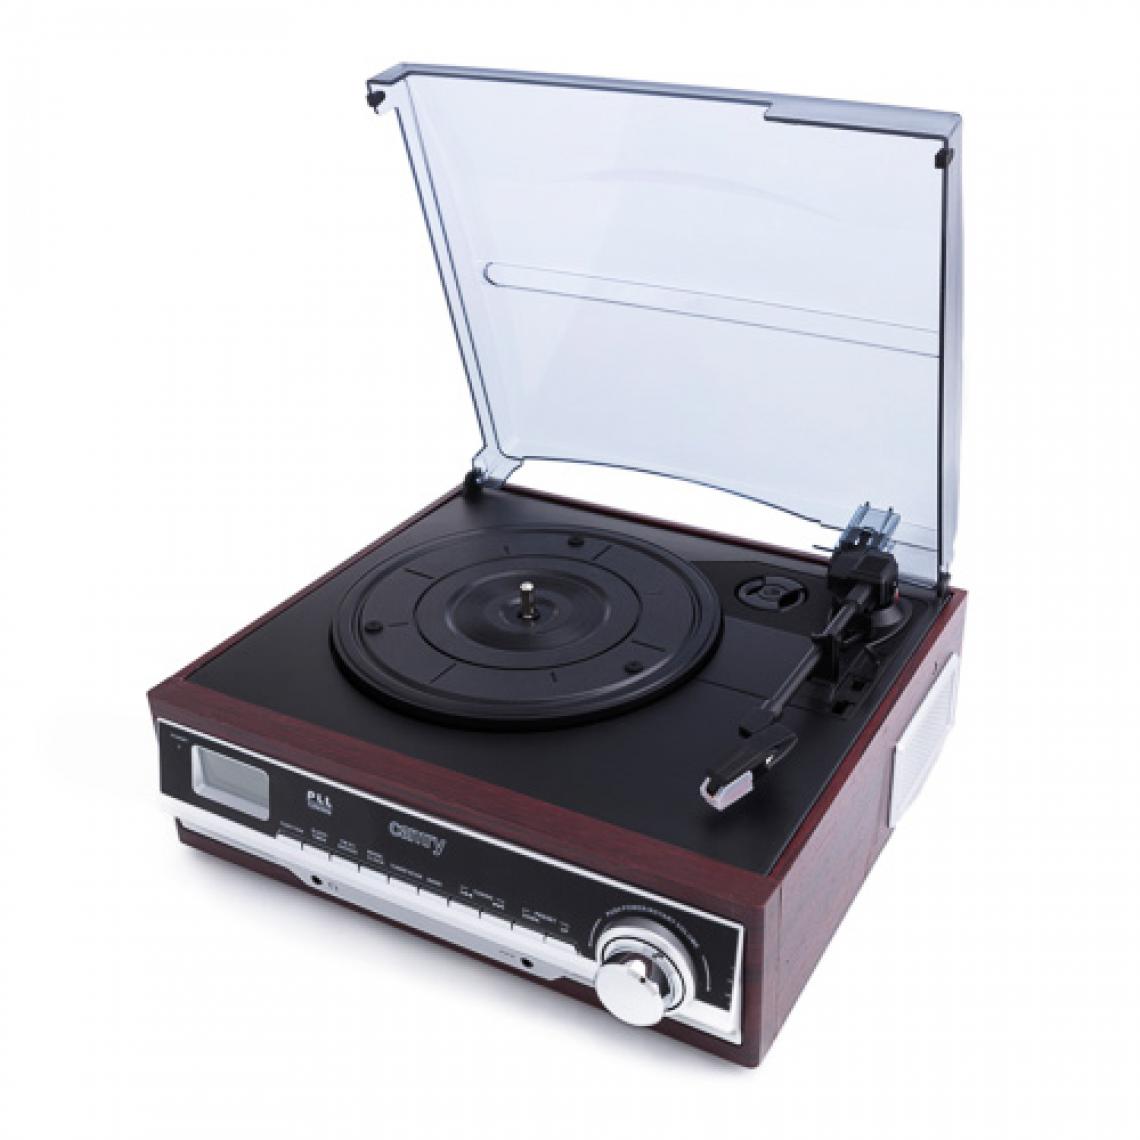 Adler - platine vinyle avec radio et Bluetooth / MP3 / USB / SD / enregistrement marron gris noir - Platine